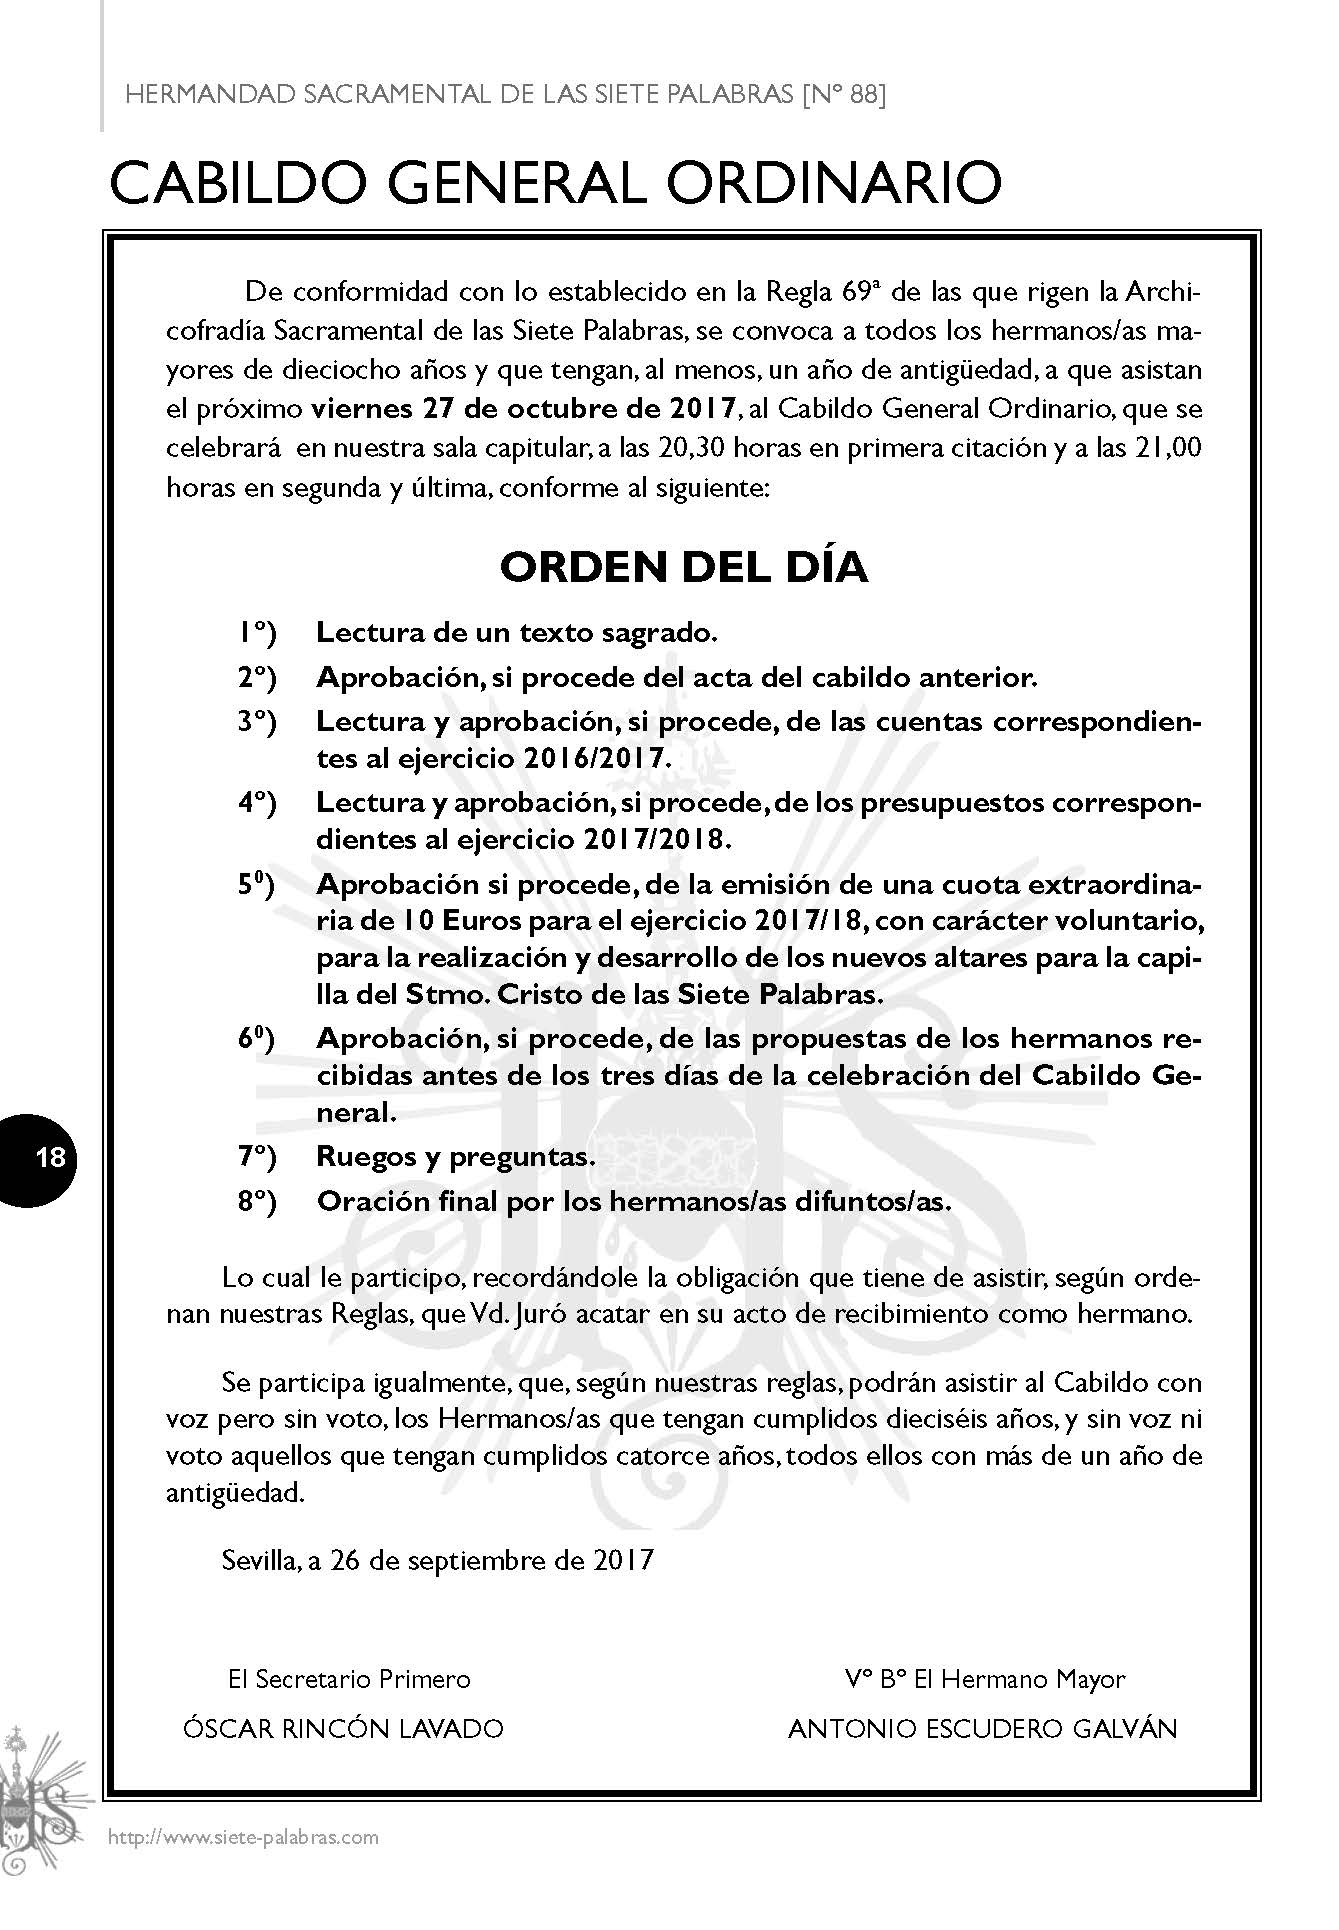 ORDEN DEL DÍA CABILDO GENERAL 27-10-2017